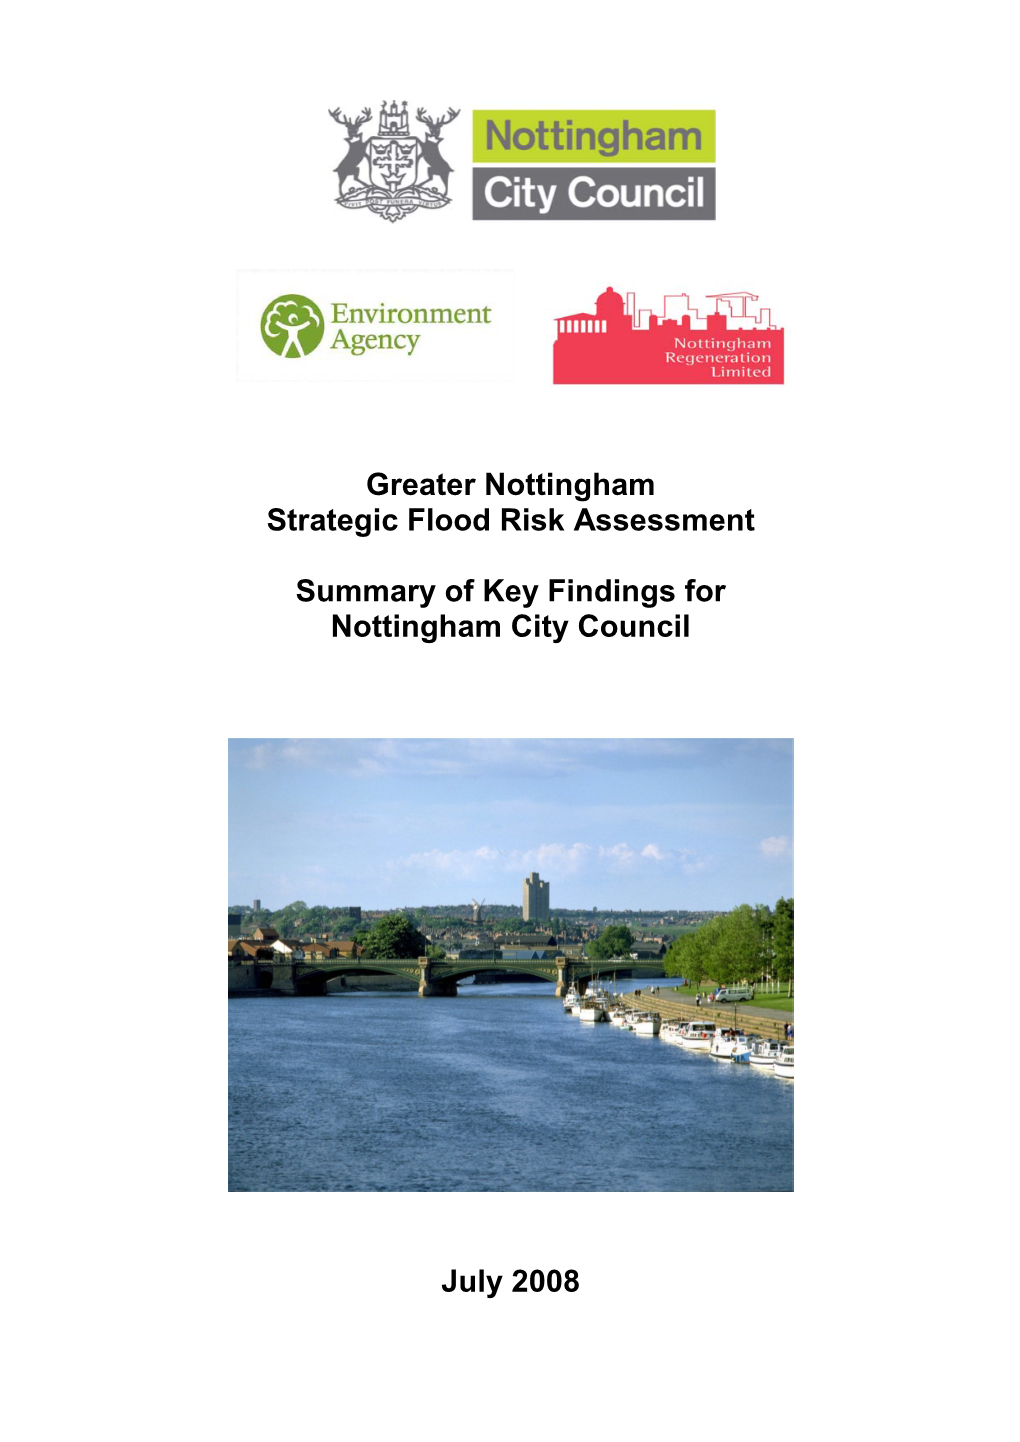 Greater Nottingham Strategic Flood Risk Assessment Summary of Key